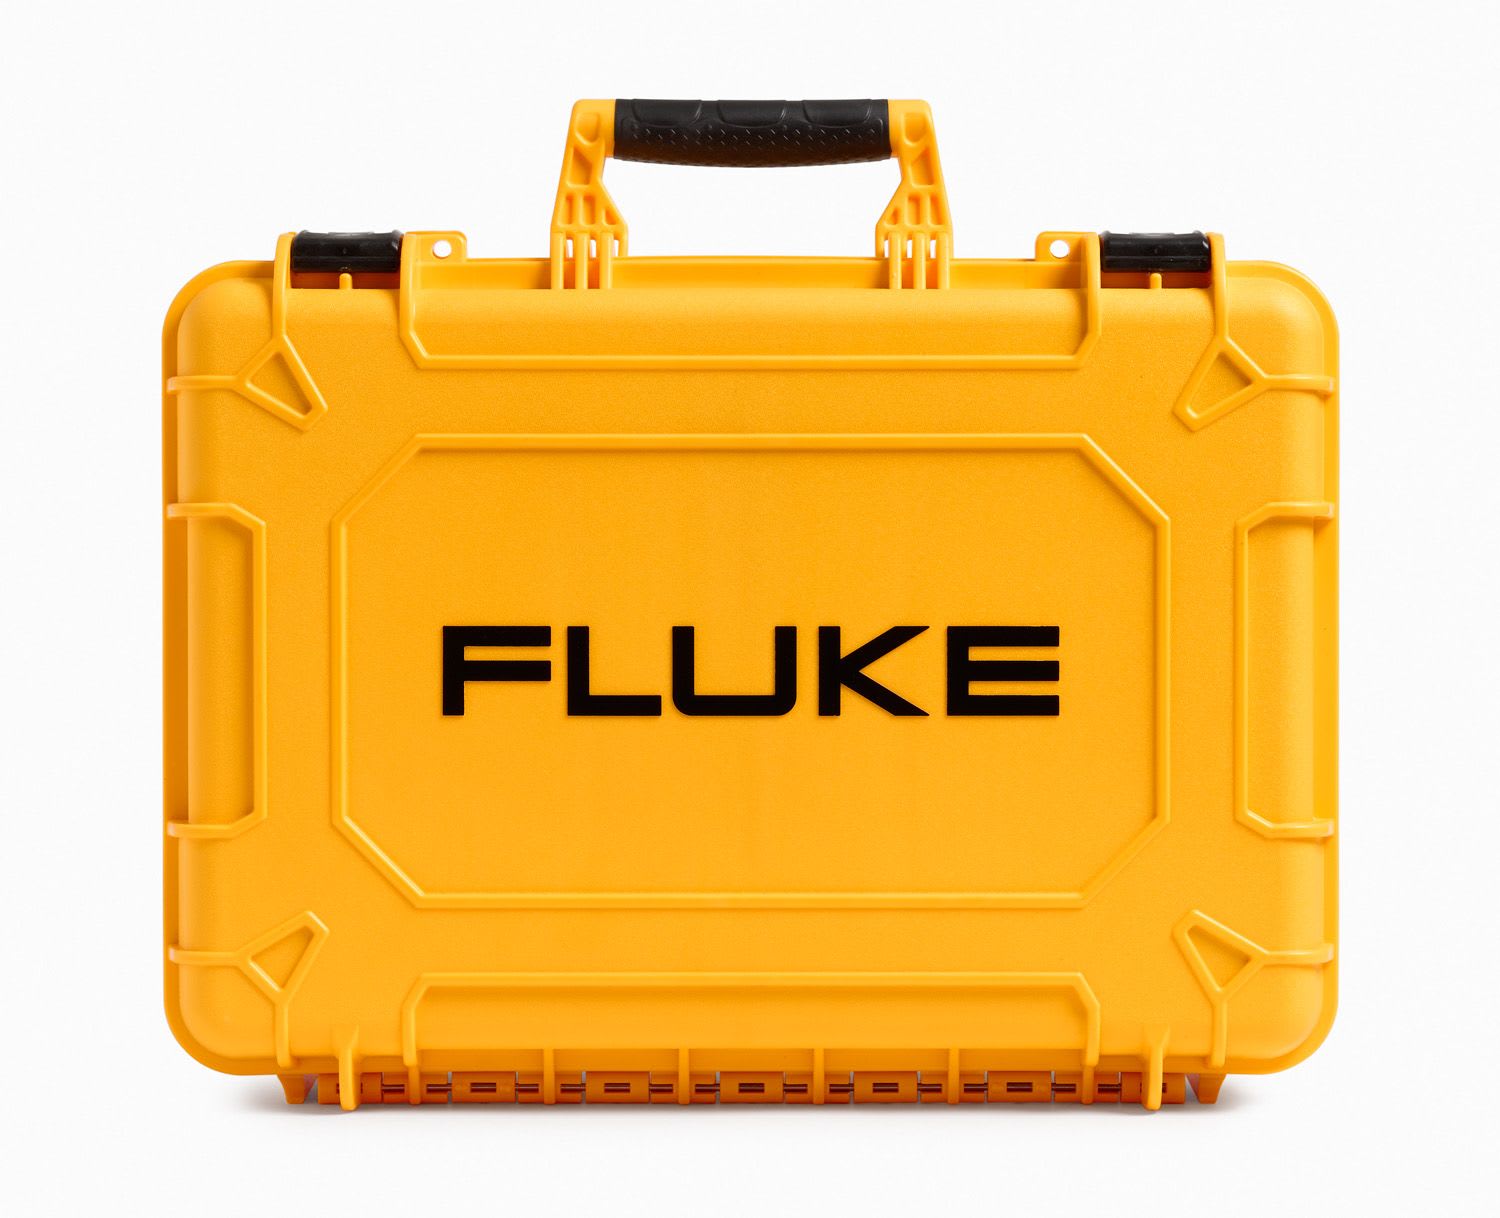 Fluke - CXT1000 Valise de transport durcie modulable, dimensions: 34,3 x 46,5 x 17,8 cm.